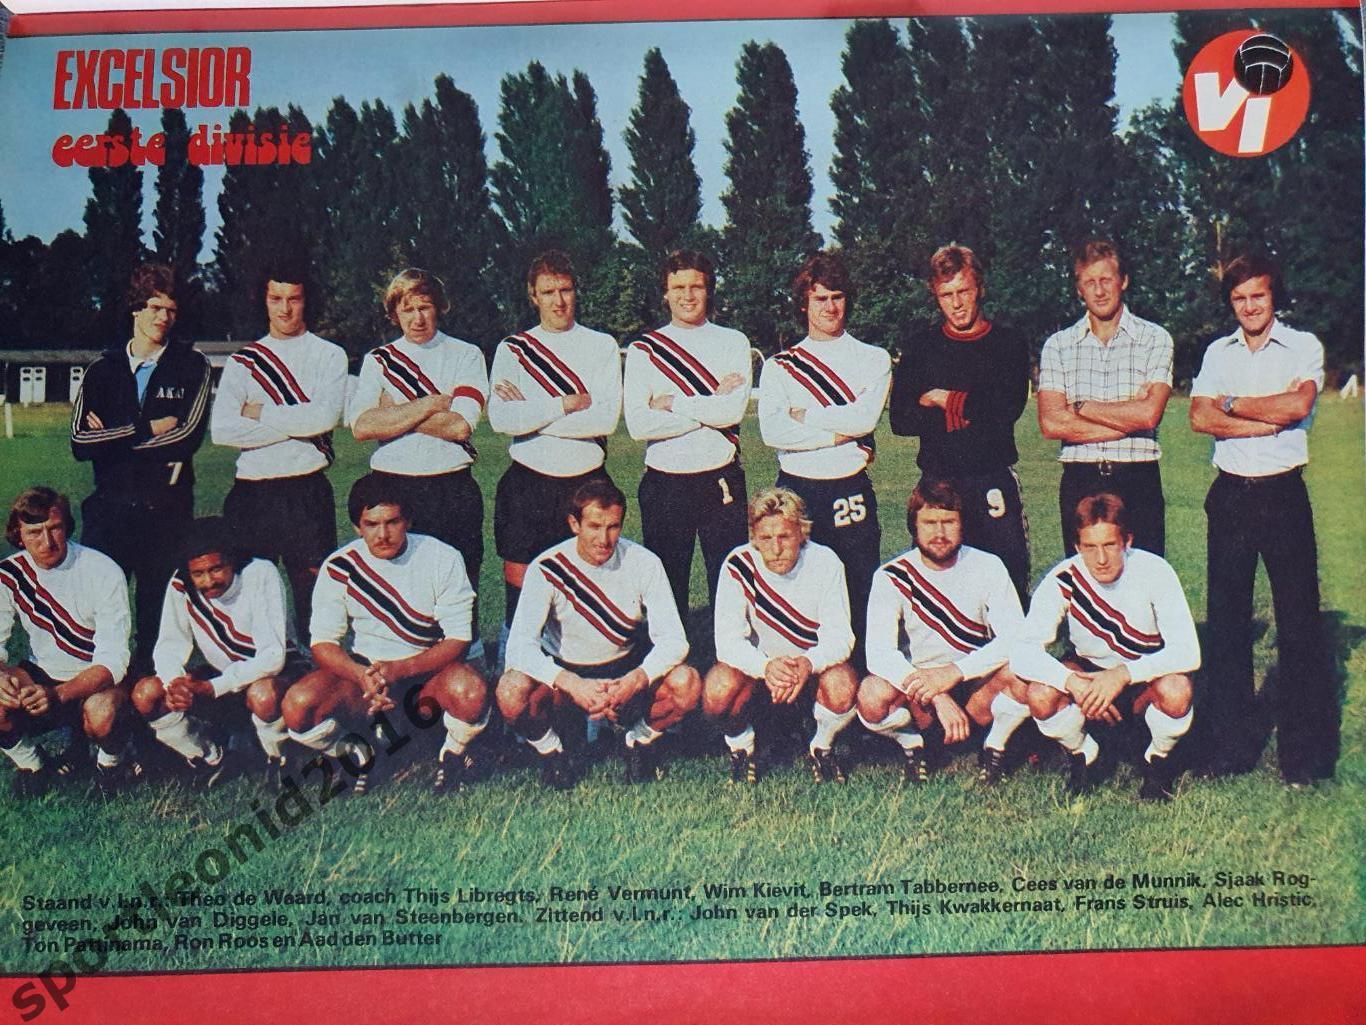 Voetbal International 1977 51 выпуск годовая подписка .2 7